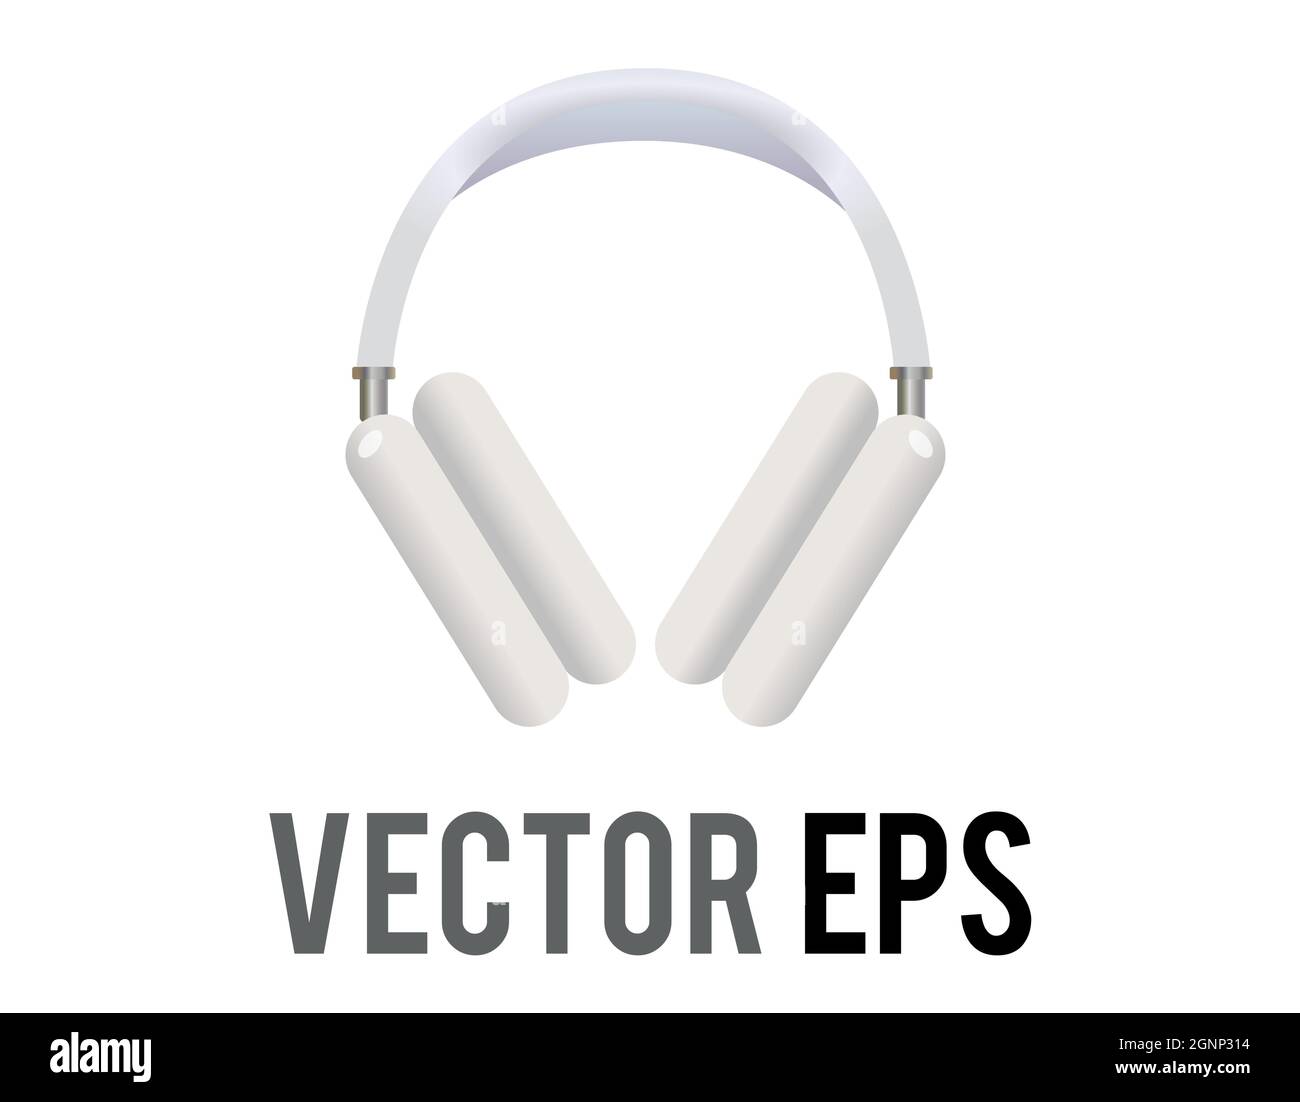 Icona delle cuffie bianche vettoriali isolate, utilizzata per ascoltare musica o altri tipi di audio Illustrazione Vettoriale